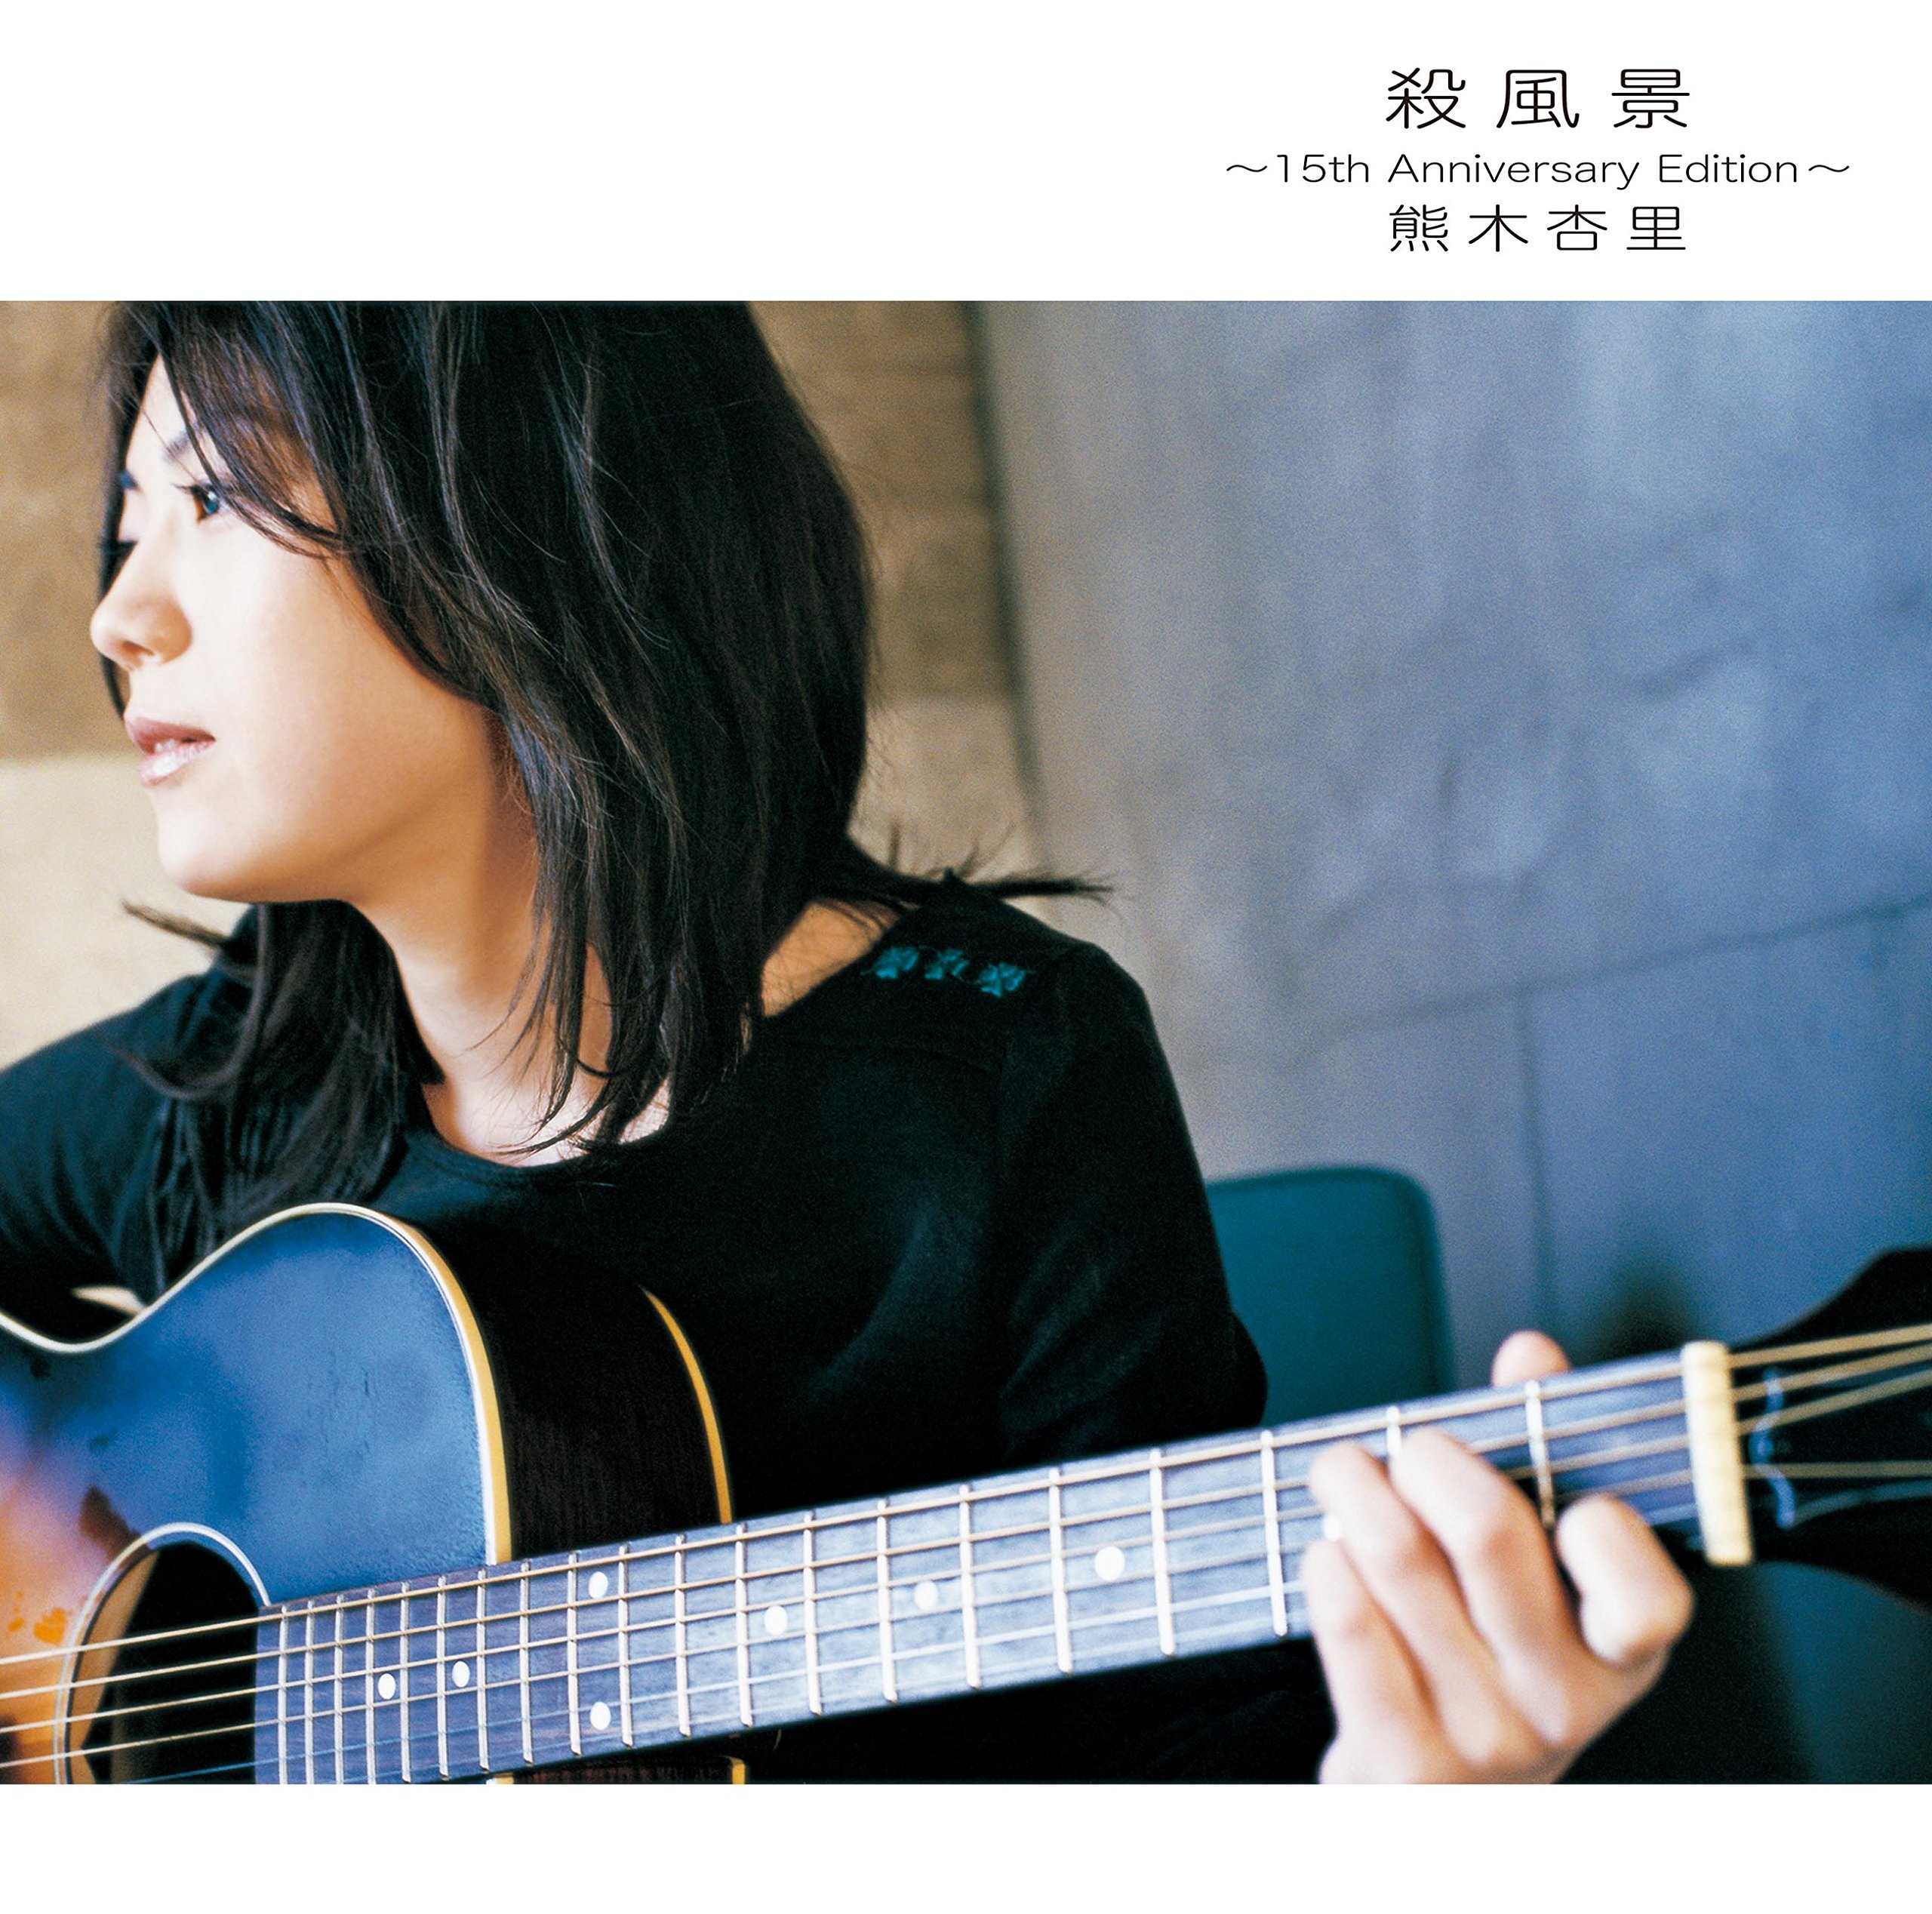 Anri Kumaki (熊木杏里) - 殺風景 ～15th Anniversary Edition～ (2003/2018) [FLAC 24bit/96kHz] Download